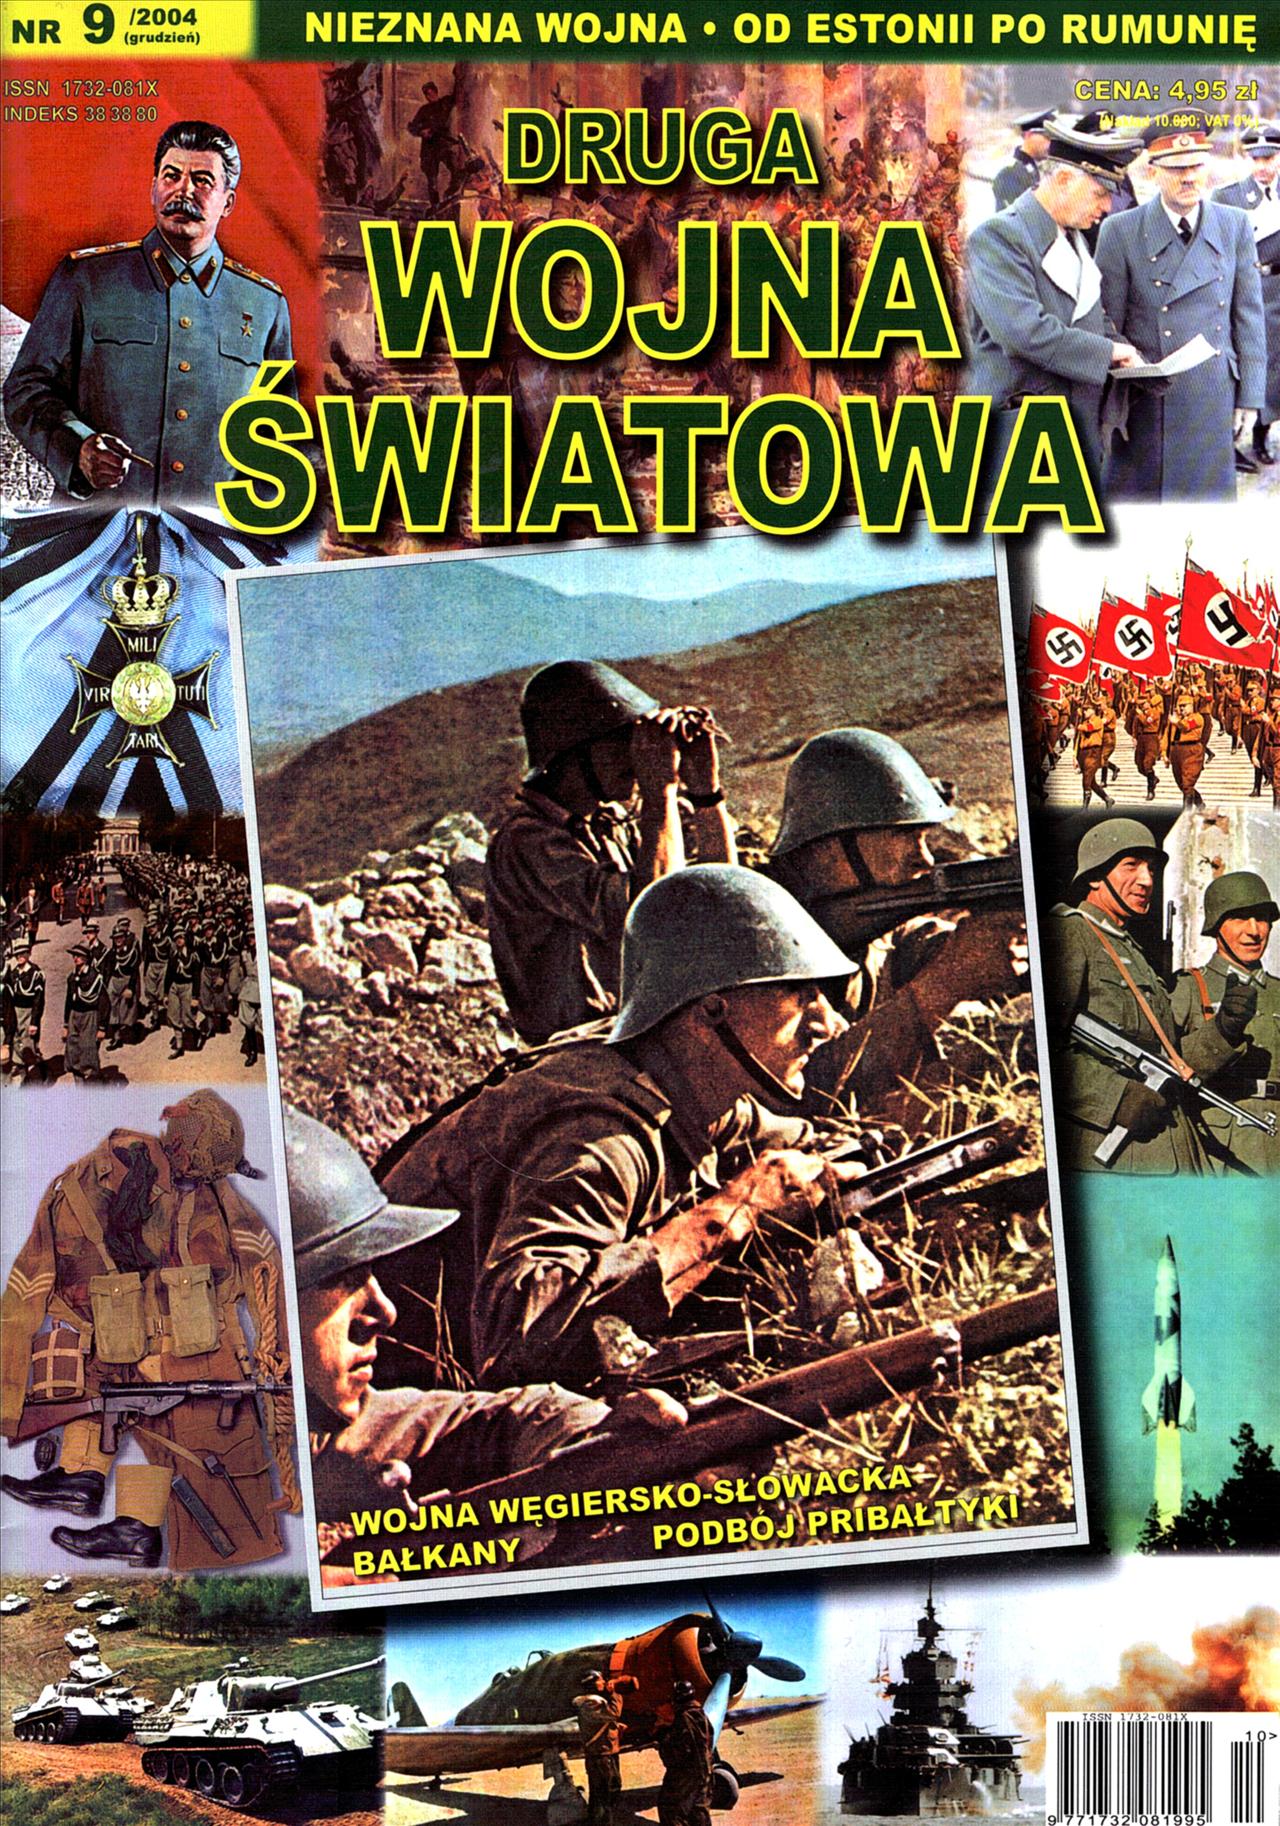 Druga Wojna Światowa3 - DWS-2004-9.jpg